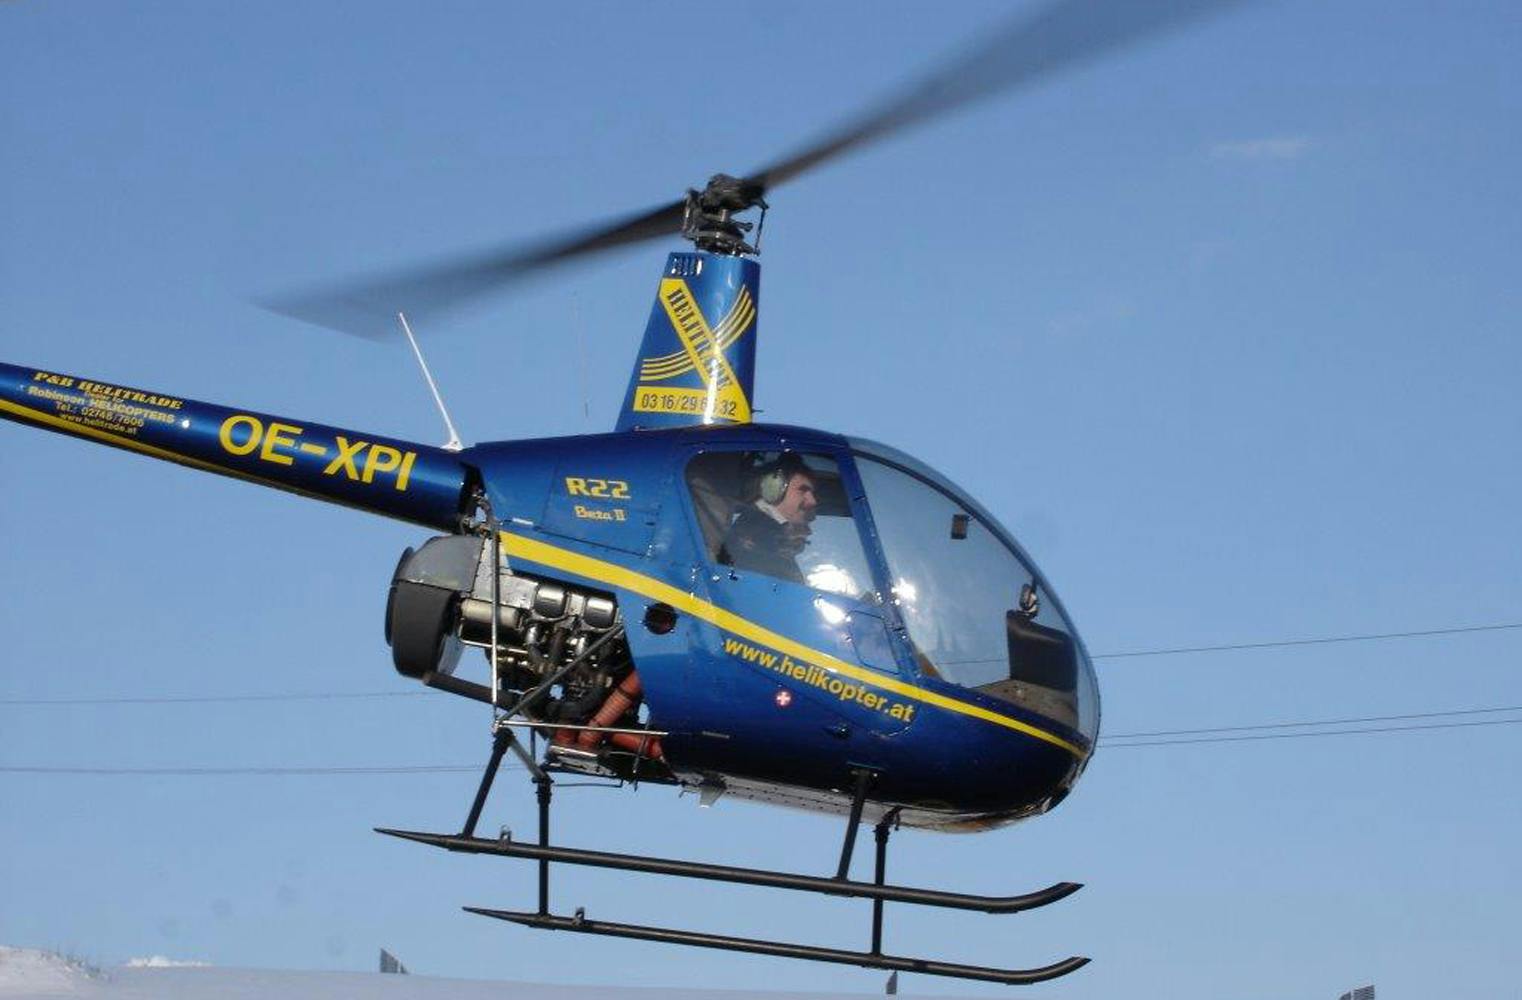 Hubschrauber selber fliegen | Helikopter R22 | 60 Minuten